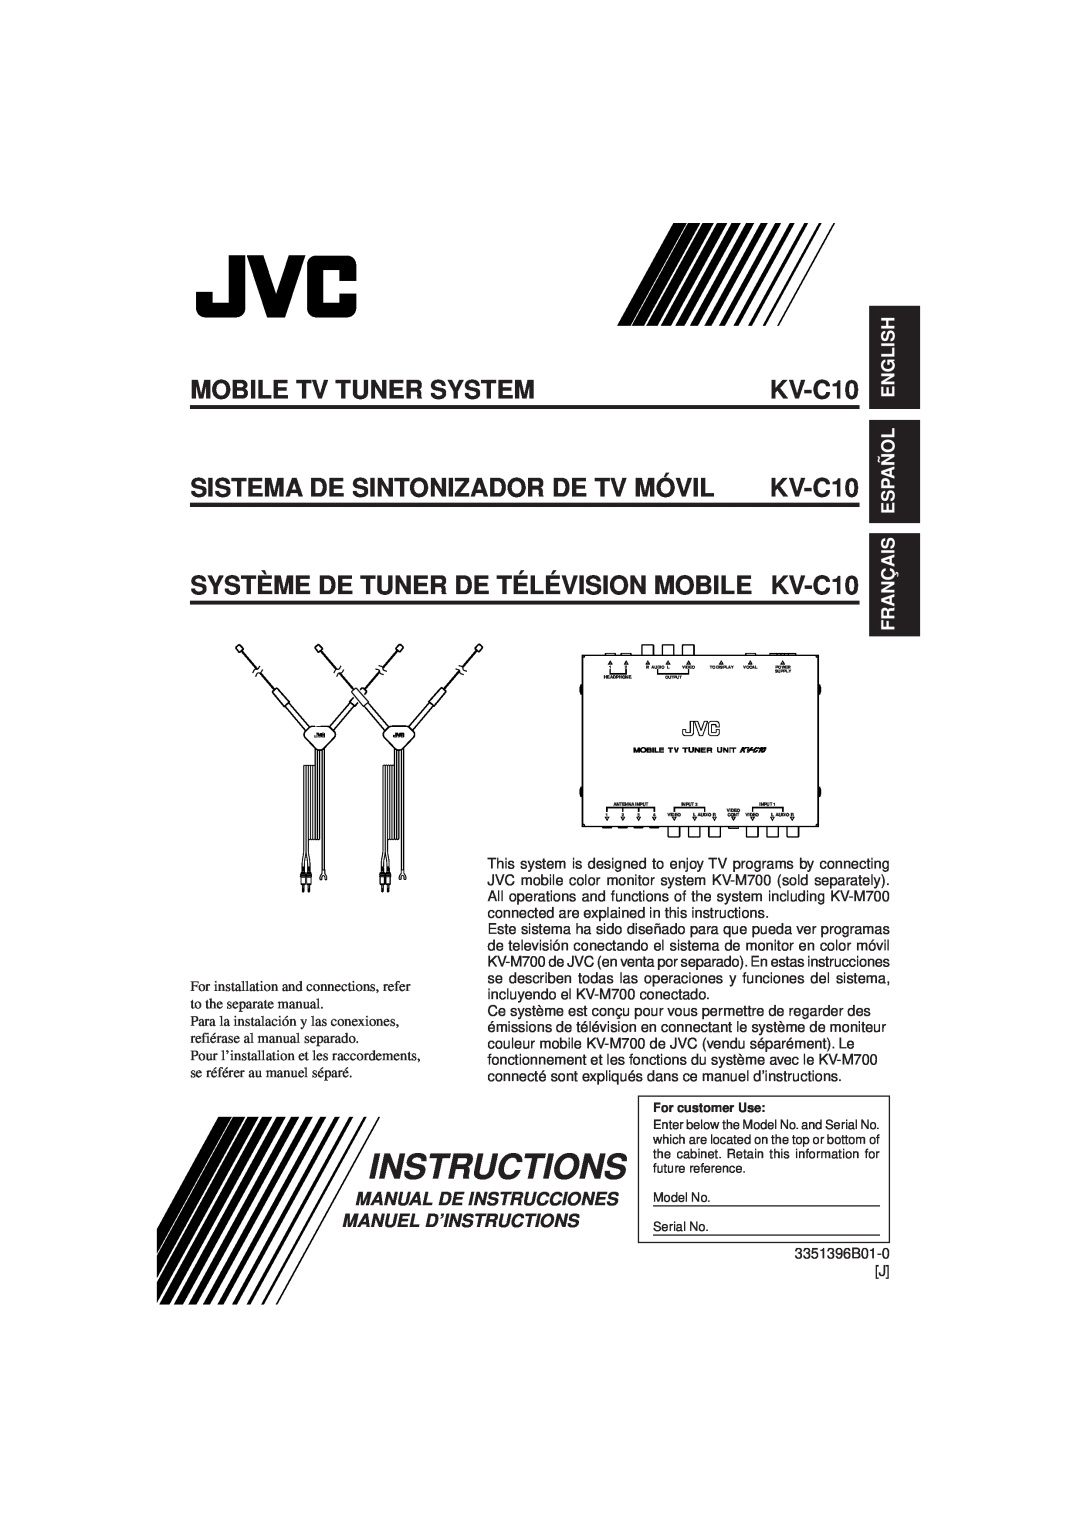 JVC KV-C10 manual Instructions, English, Français Español, Mobile Tv Tuner System, Sistema De Sintonizador De Tv Móvil 